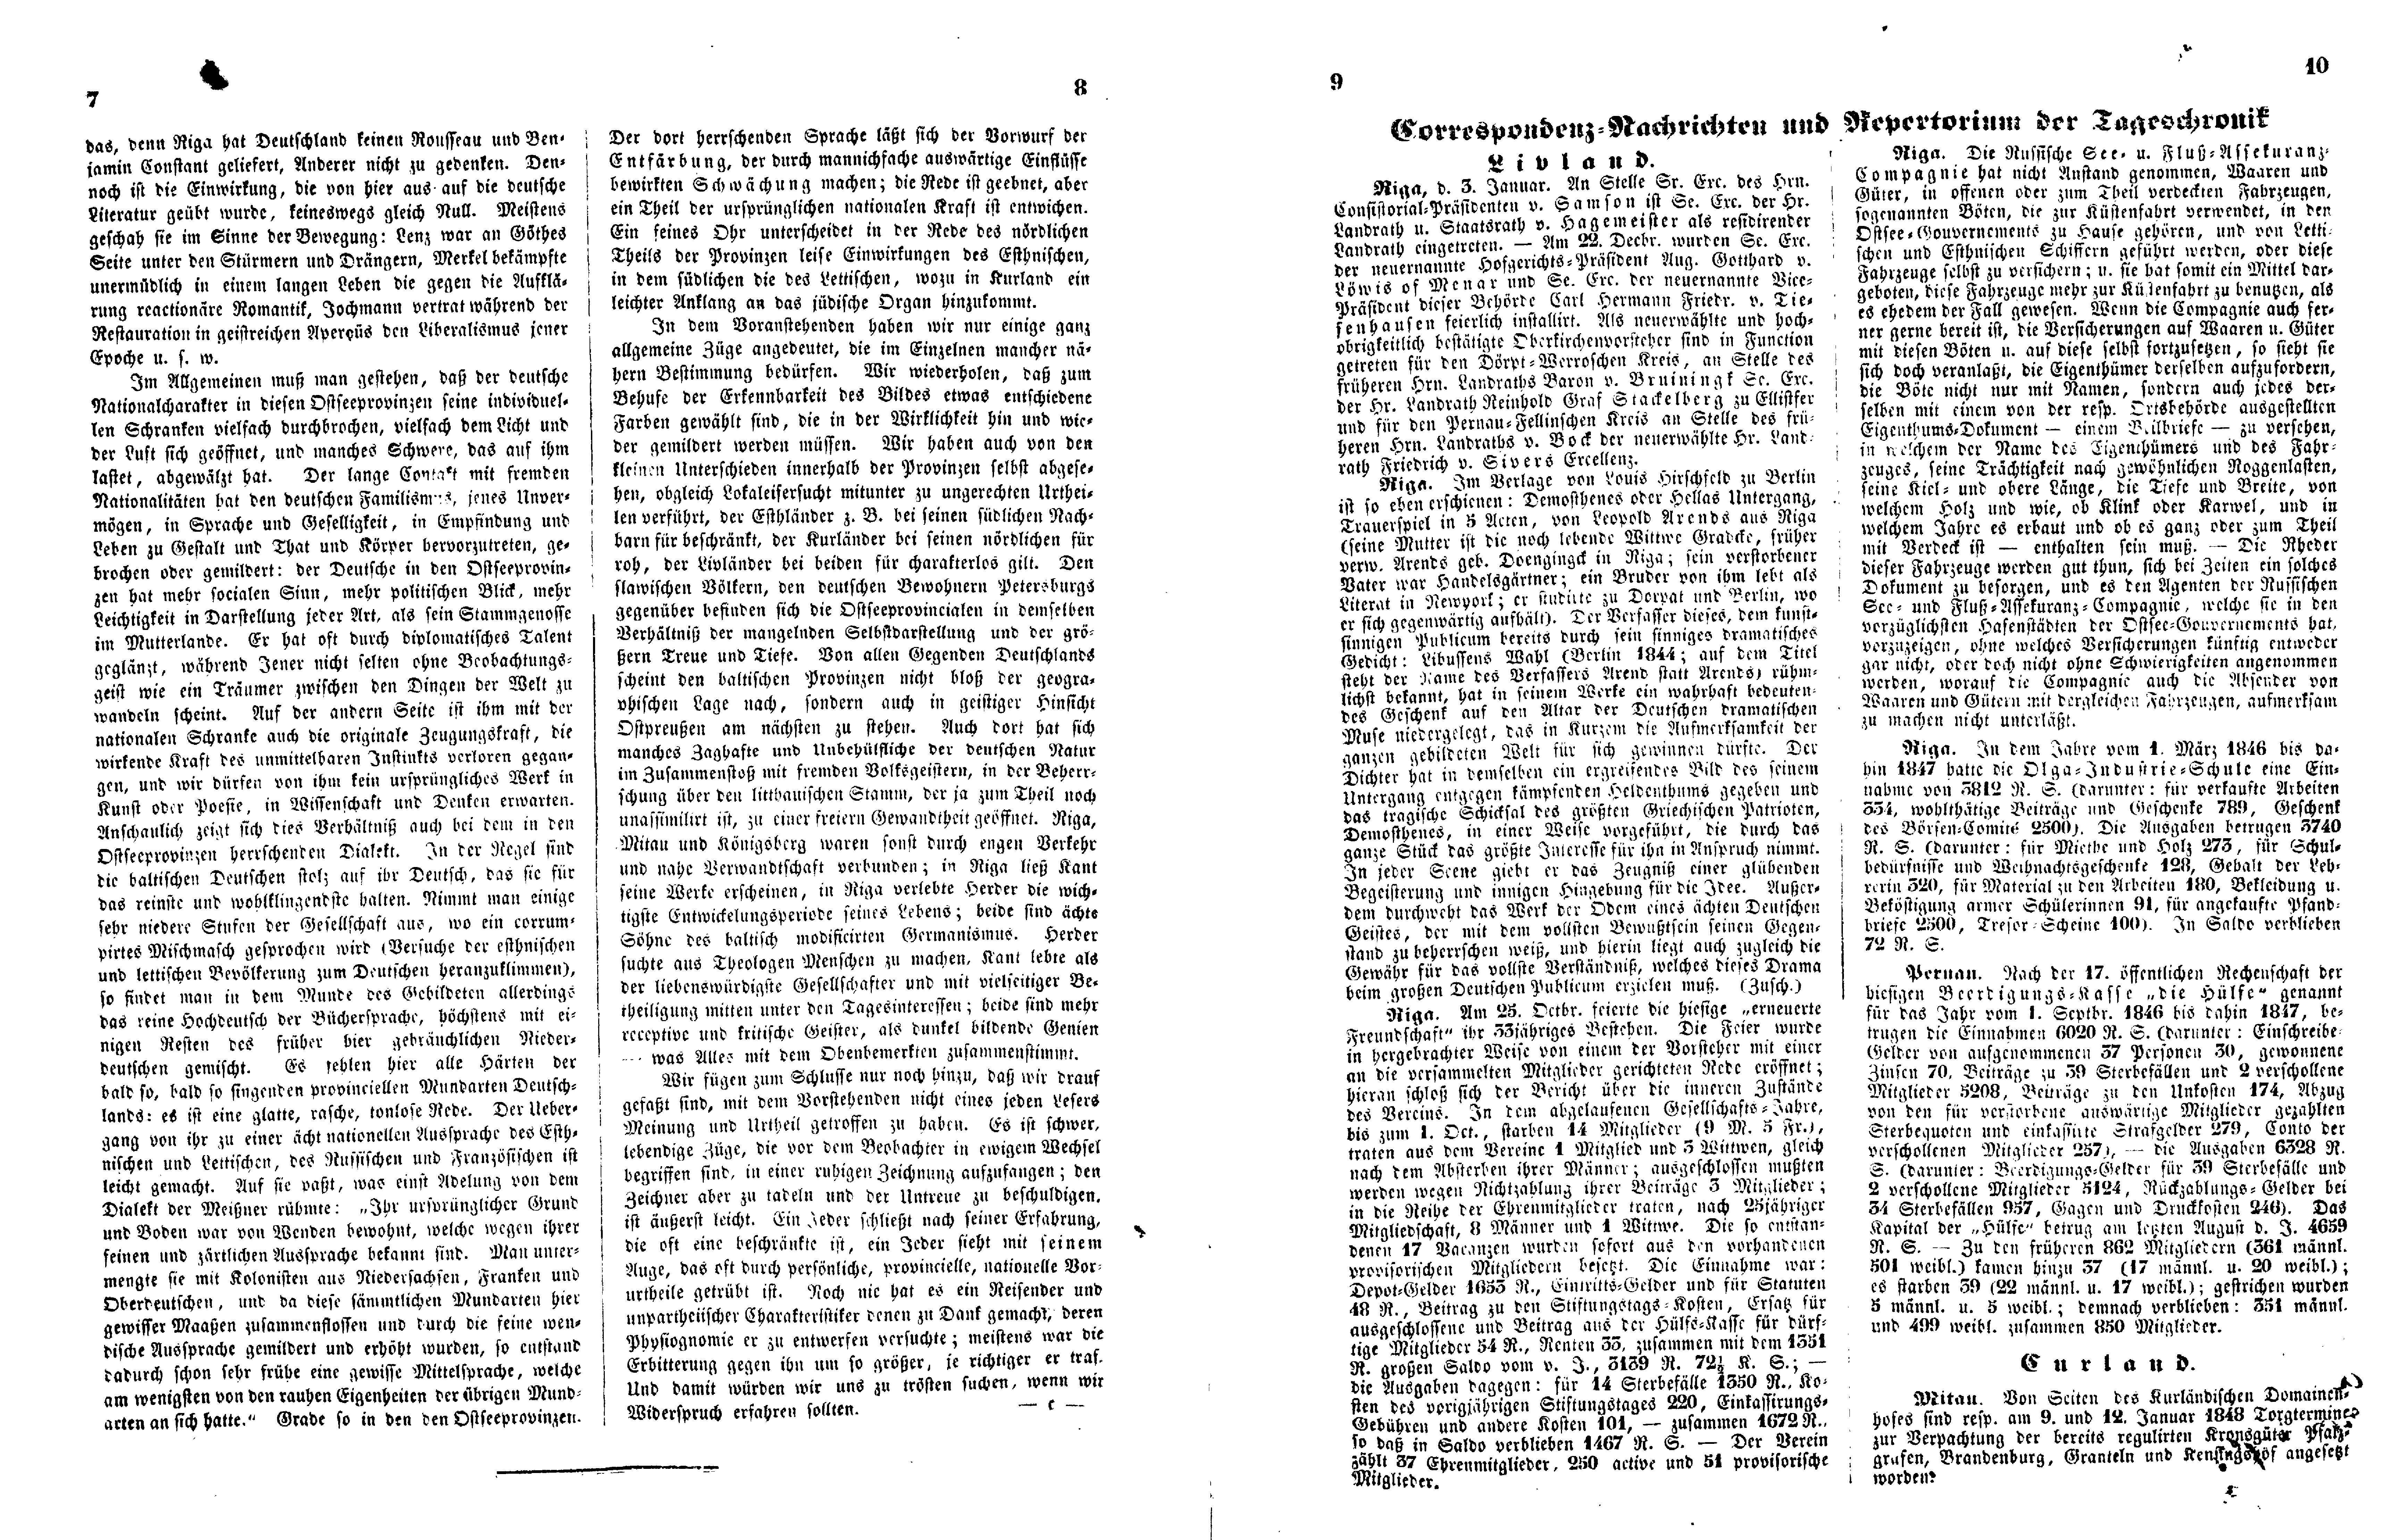 Ueber den Charakter der Liv-, Esth- und Kurländer (1848) | 3. (7-10) Main body of text